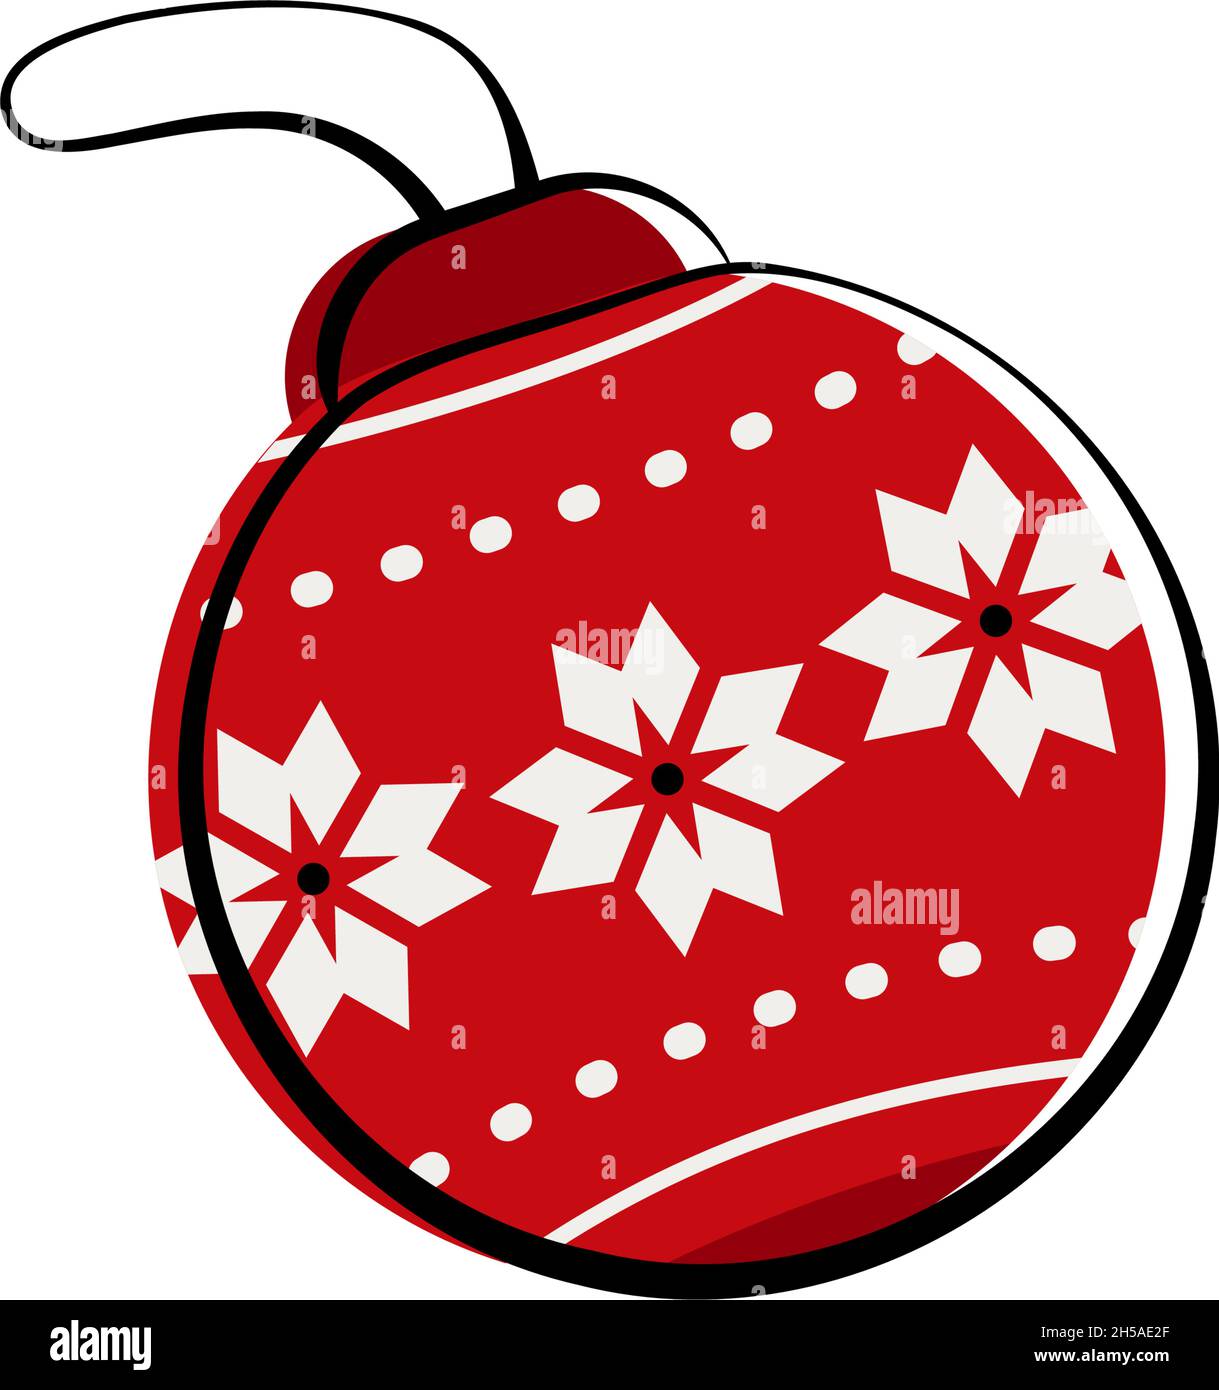 Weihnachtsbaumkugel zur Dekoration mit Ornament. Vektorgrafik flach Stock Vektor